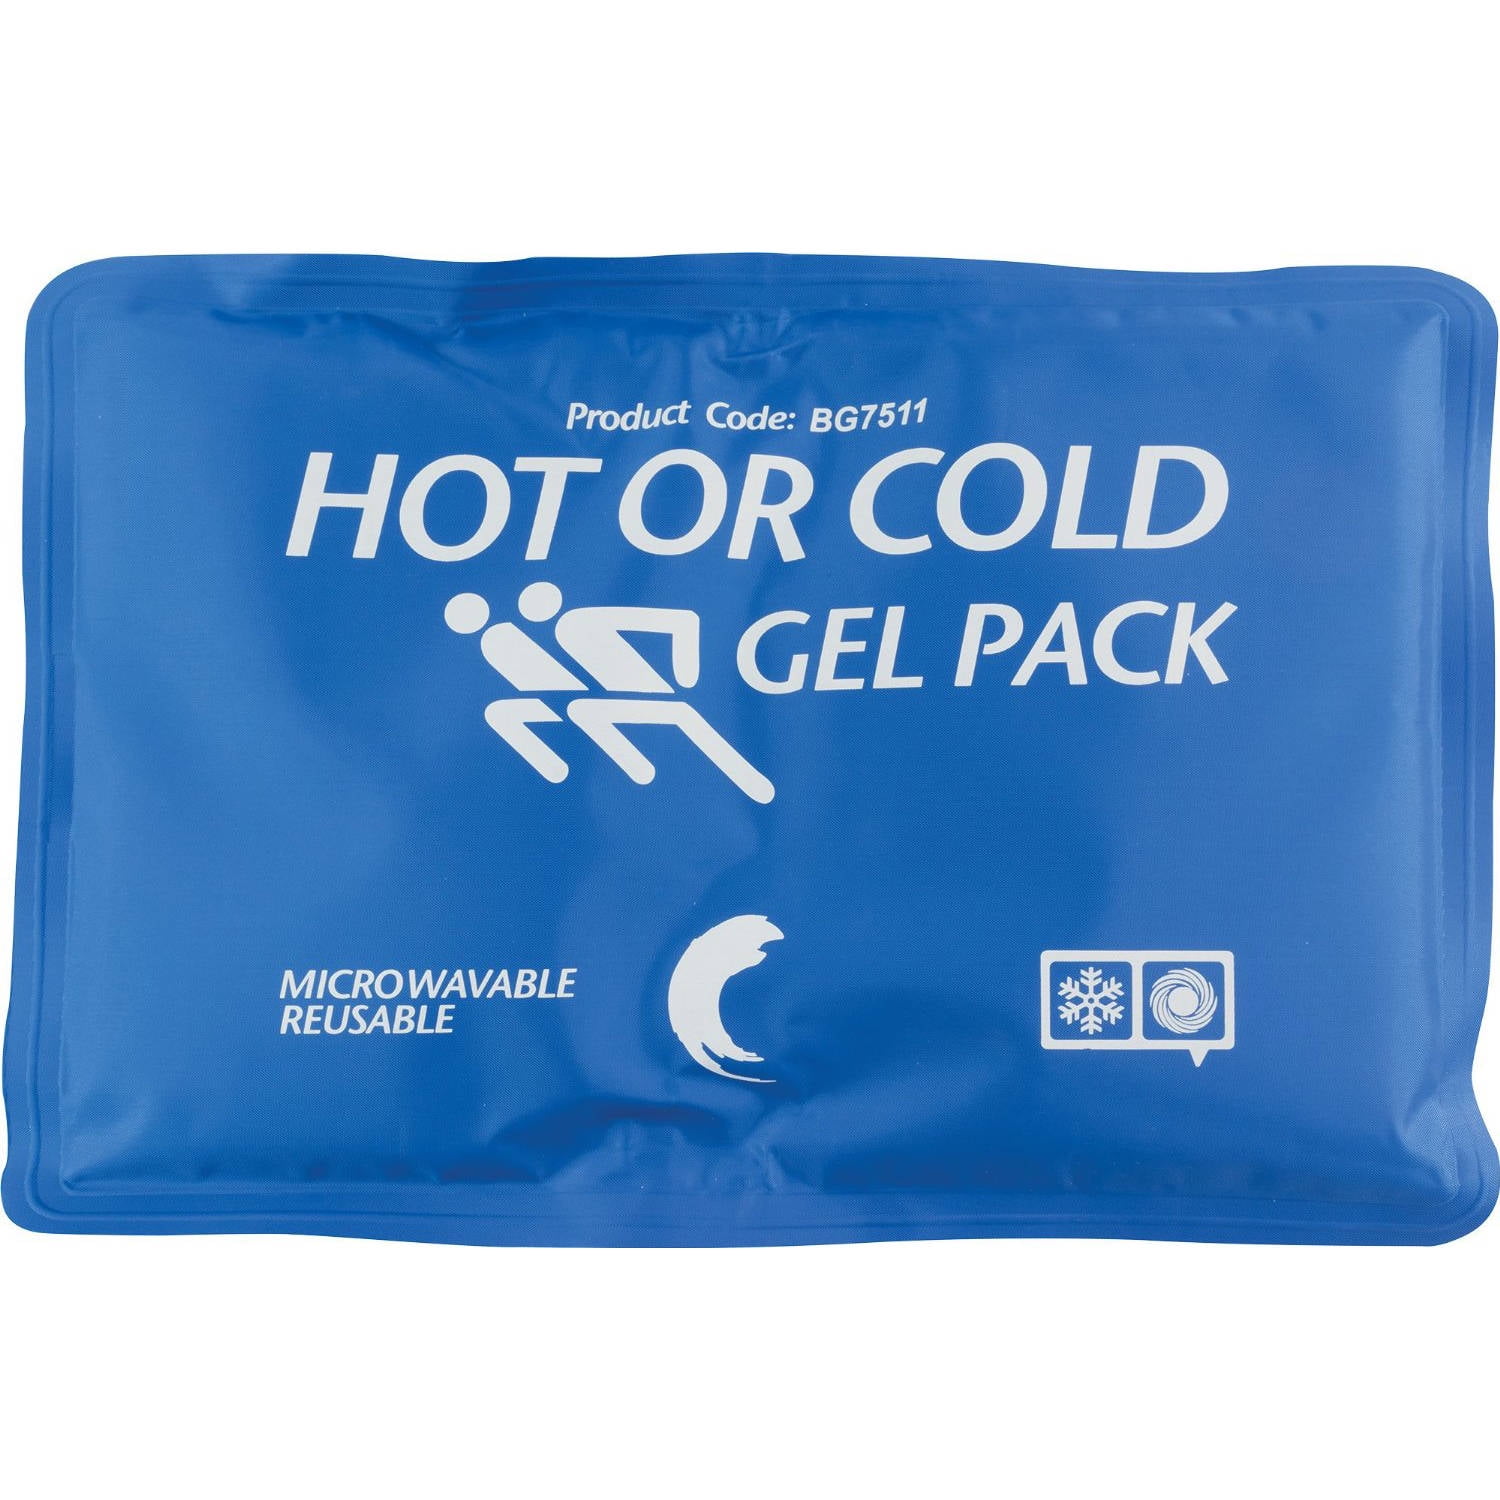 Cold back. Gel Pack. Cold Pack. Hot or Cold Gel Pack. Гель пак 26 производители.